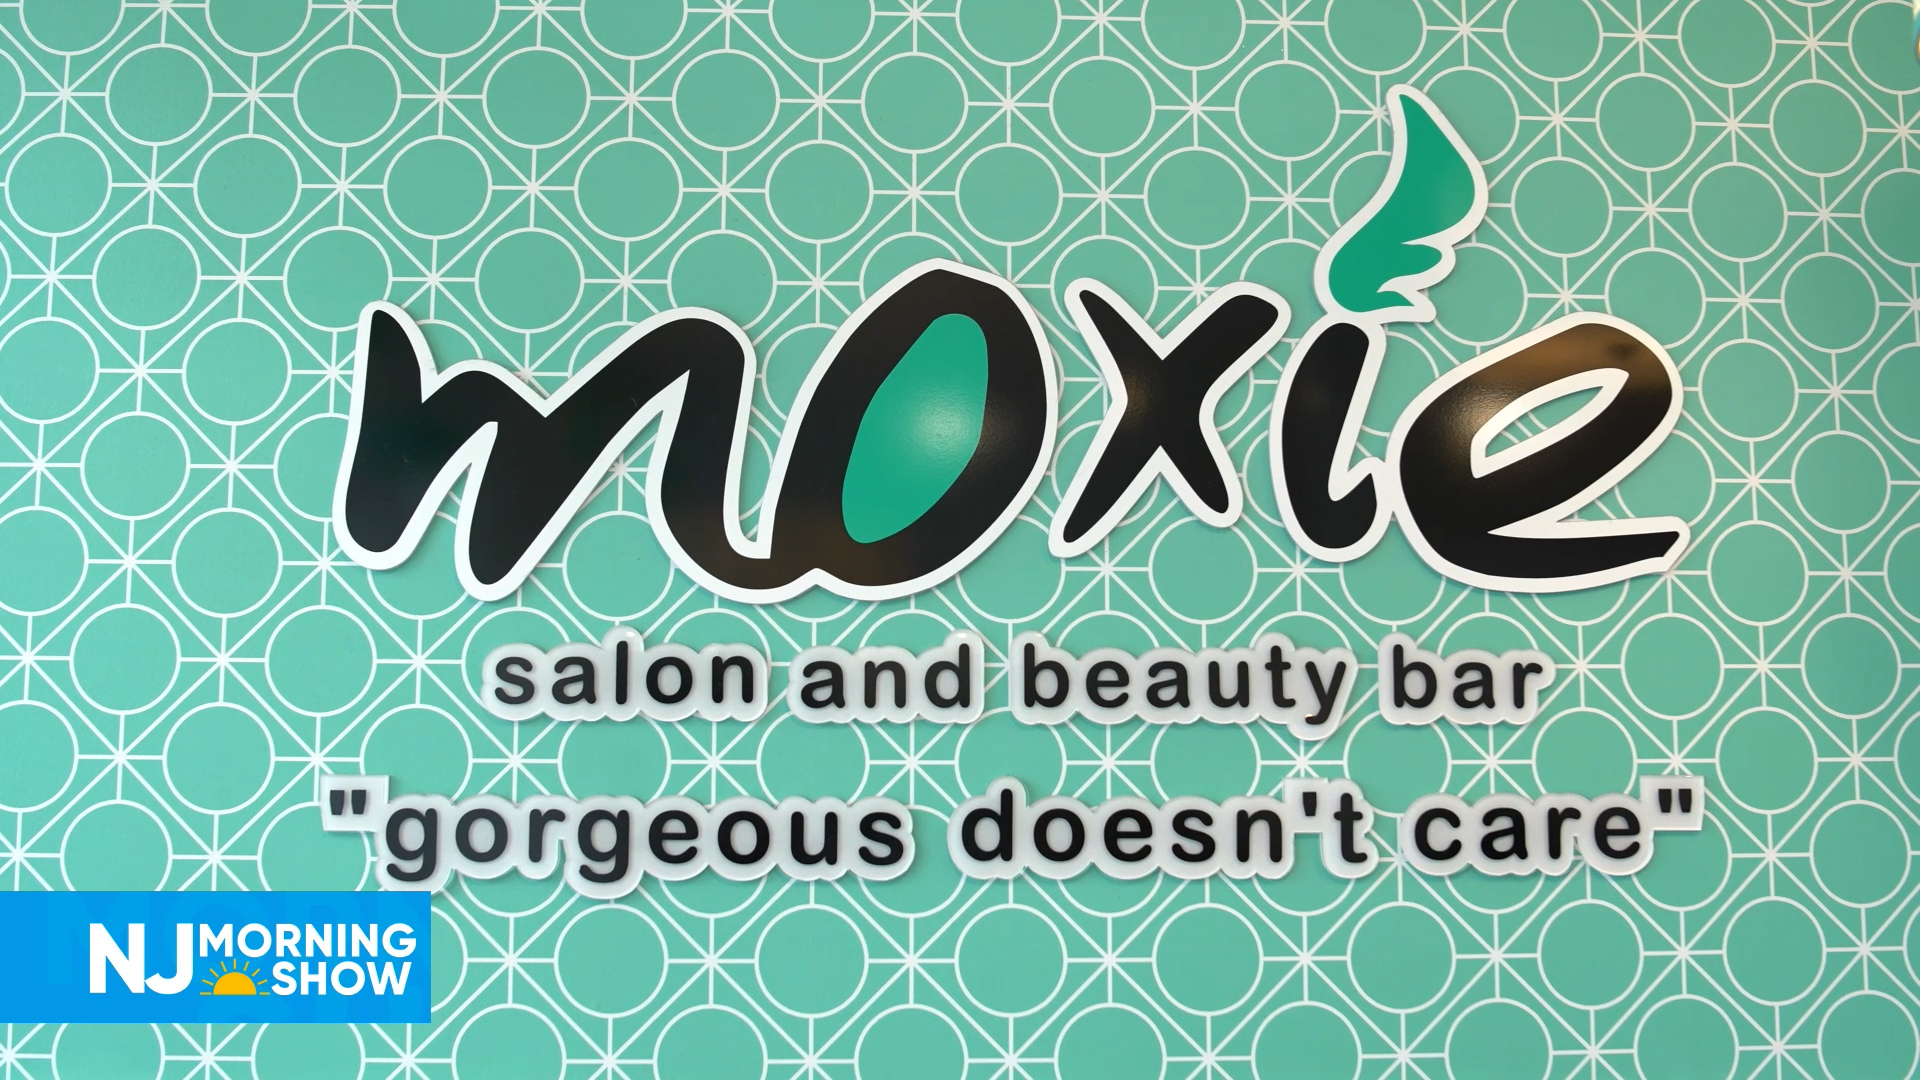 NJ Morning Show – Moxie Salon and Beauty Bar